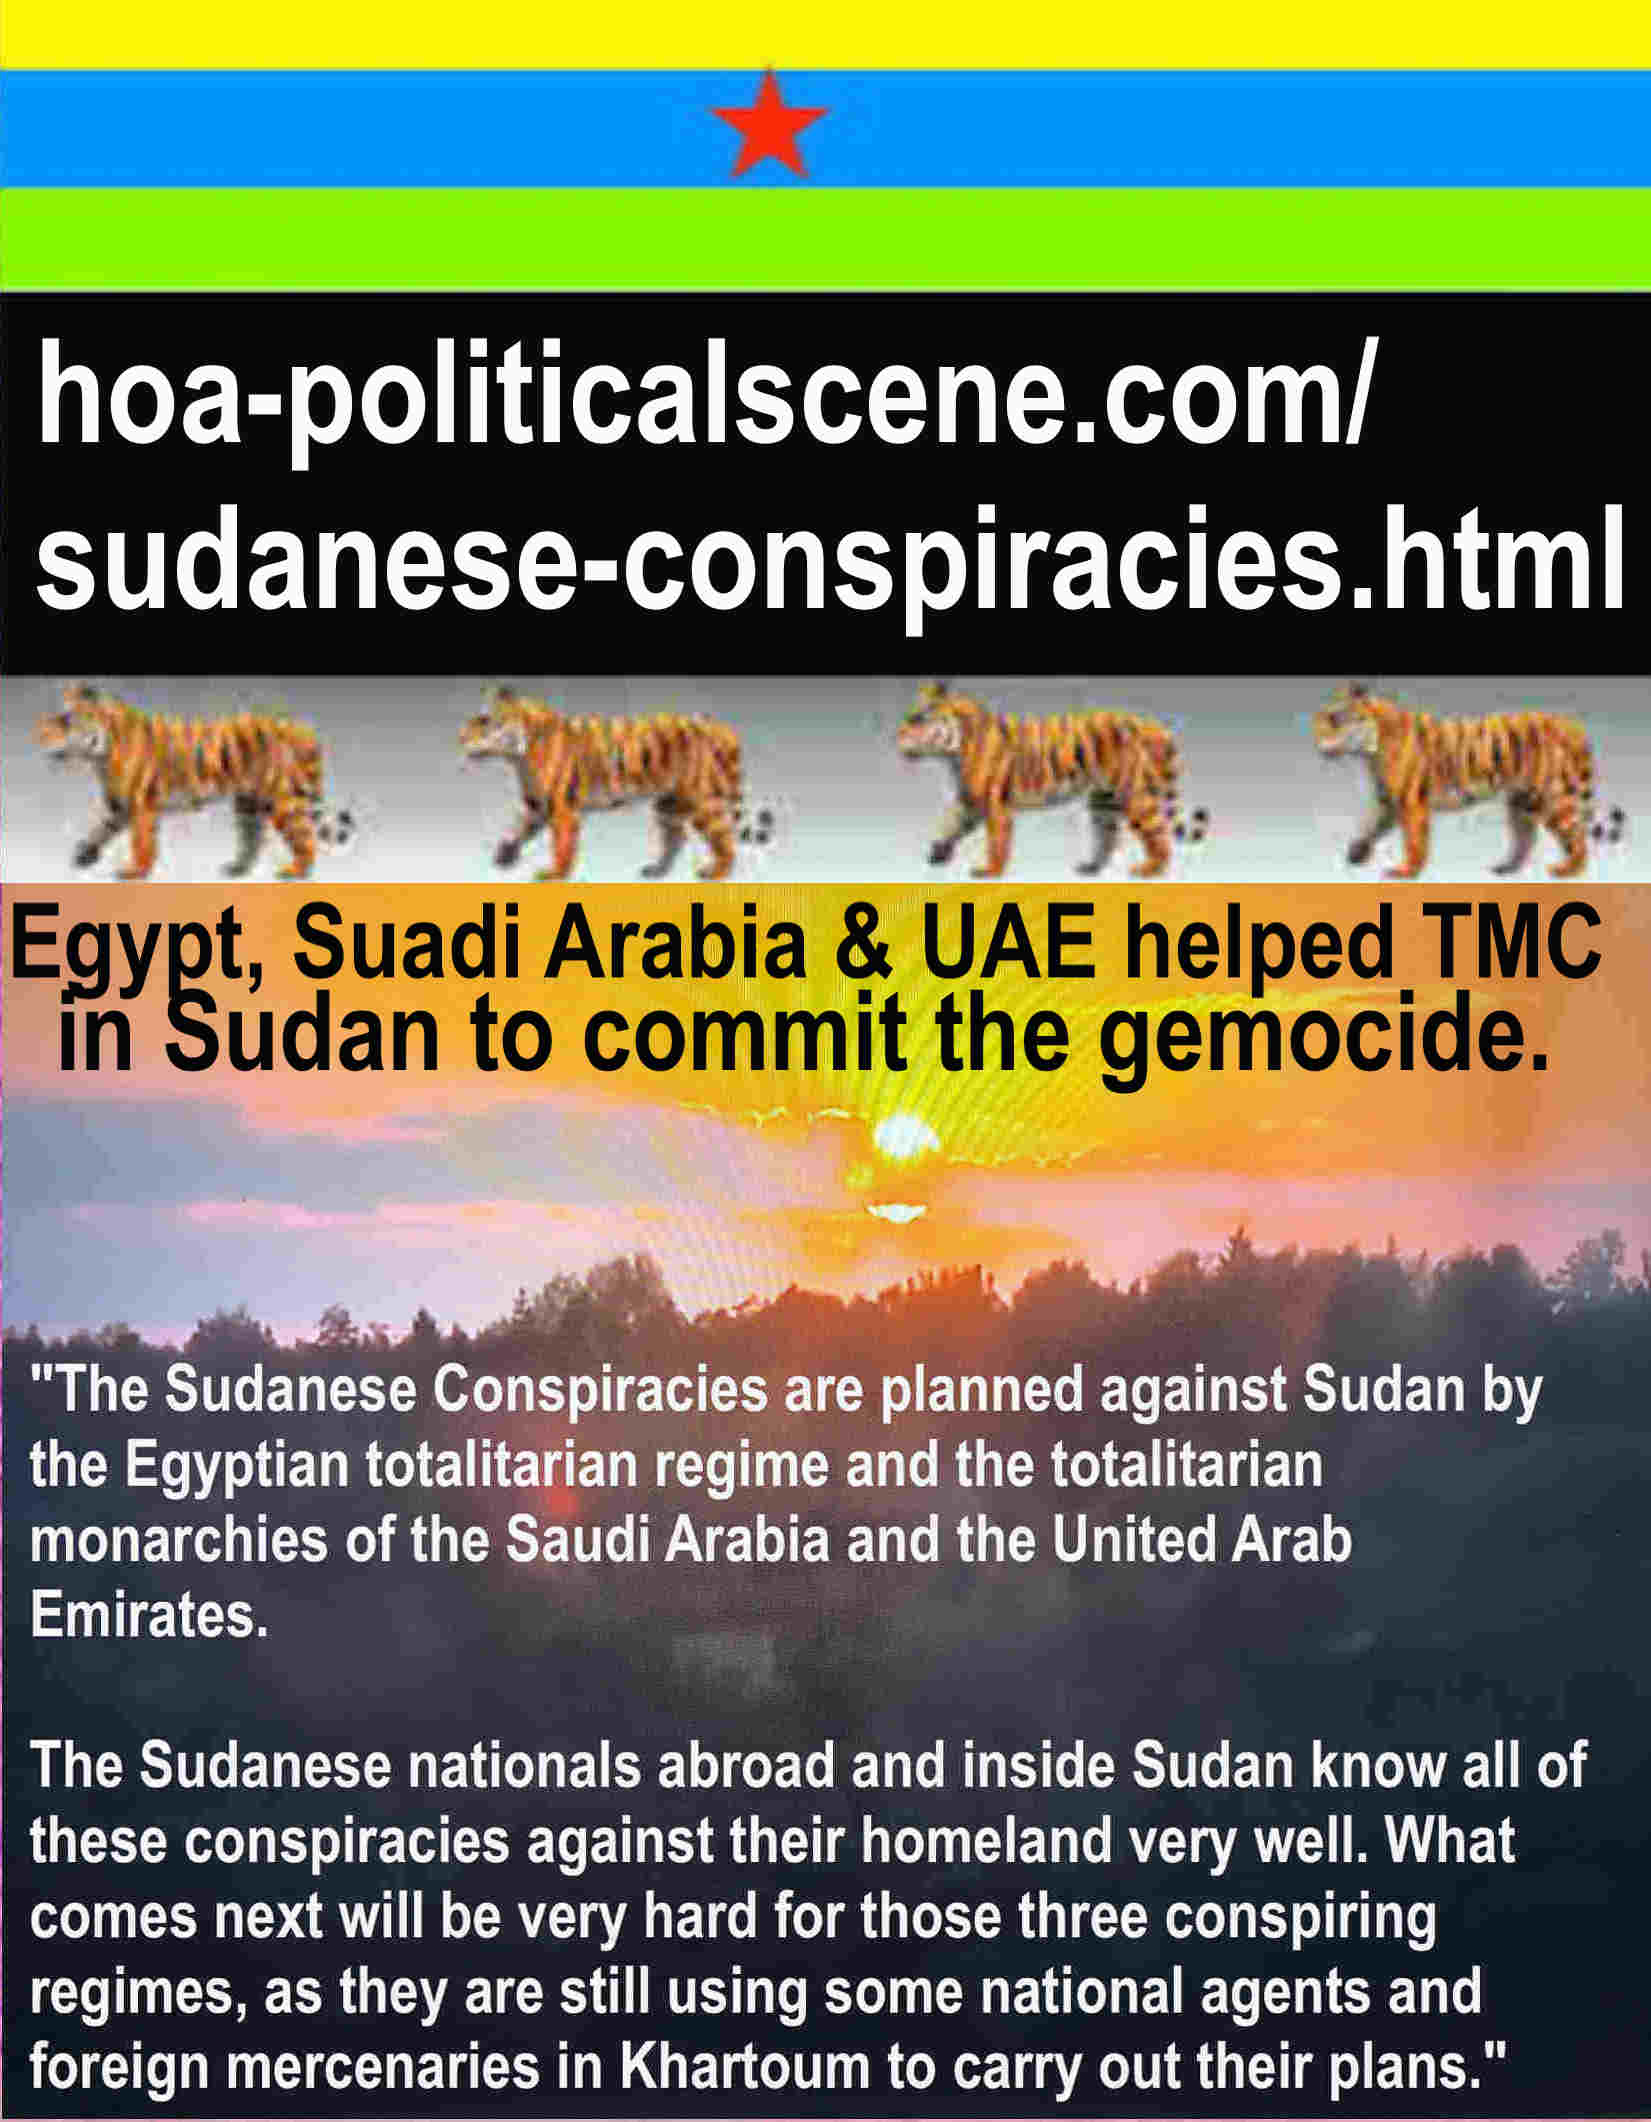 hoa-politicalscene.com/world-governments-mess.html - World Powers Chaos: لن ينجح الشعب السوداني أبداً في الثورة بدون وجود الآليات الثلاث للثورة التقدمية التي أعددتها منذ سنوات لوقف المؤامرات الأجنبية.